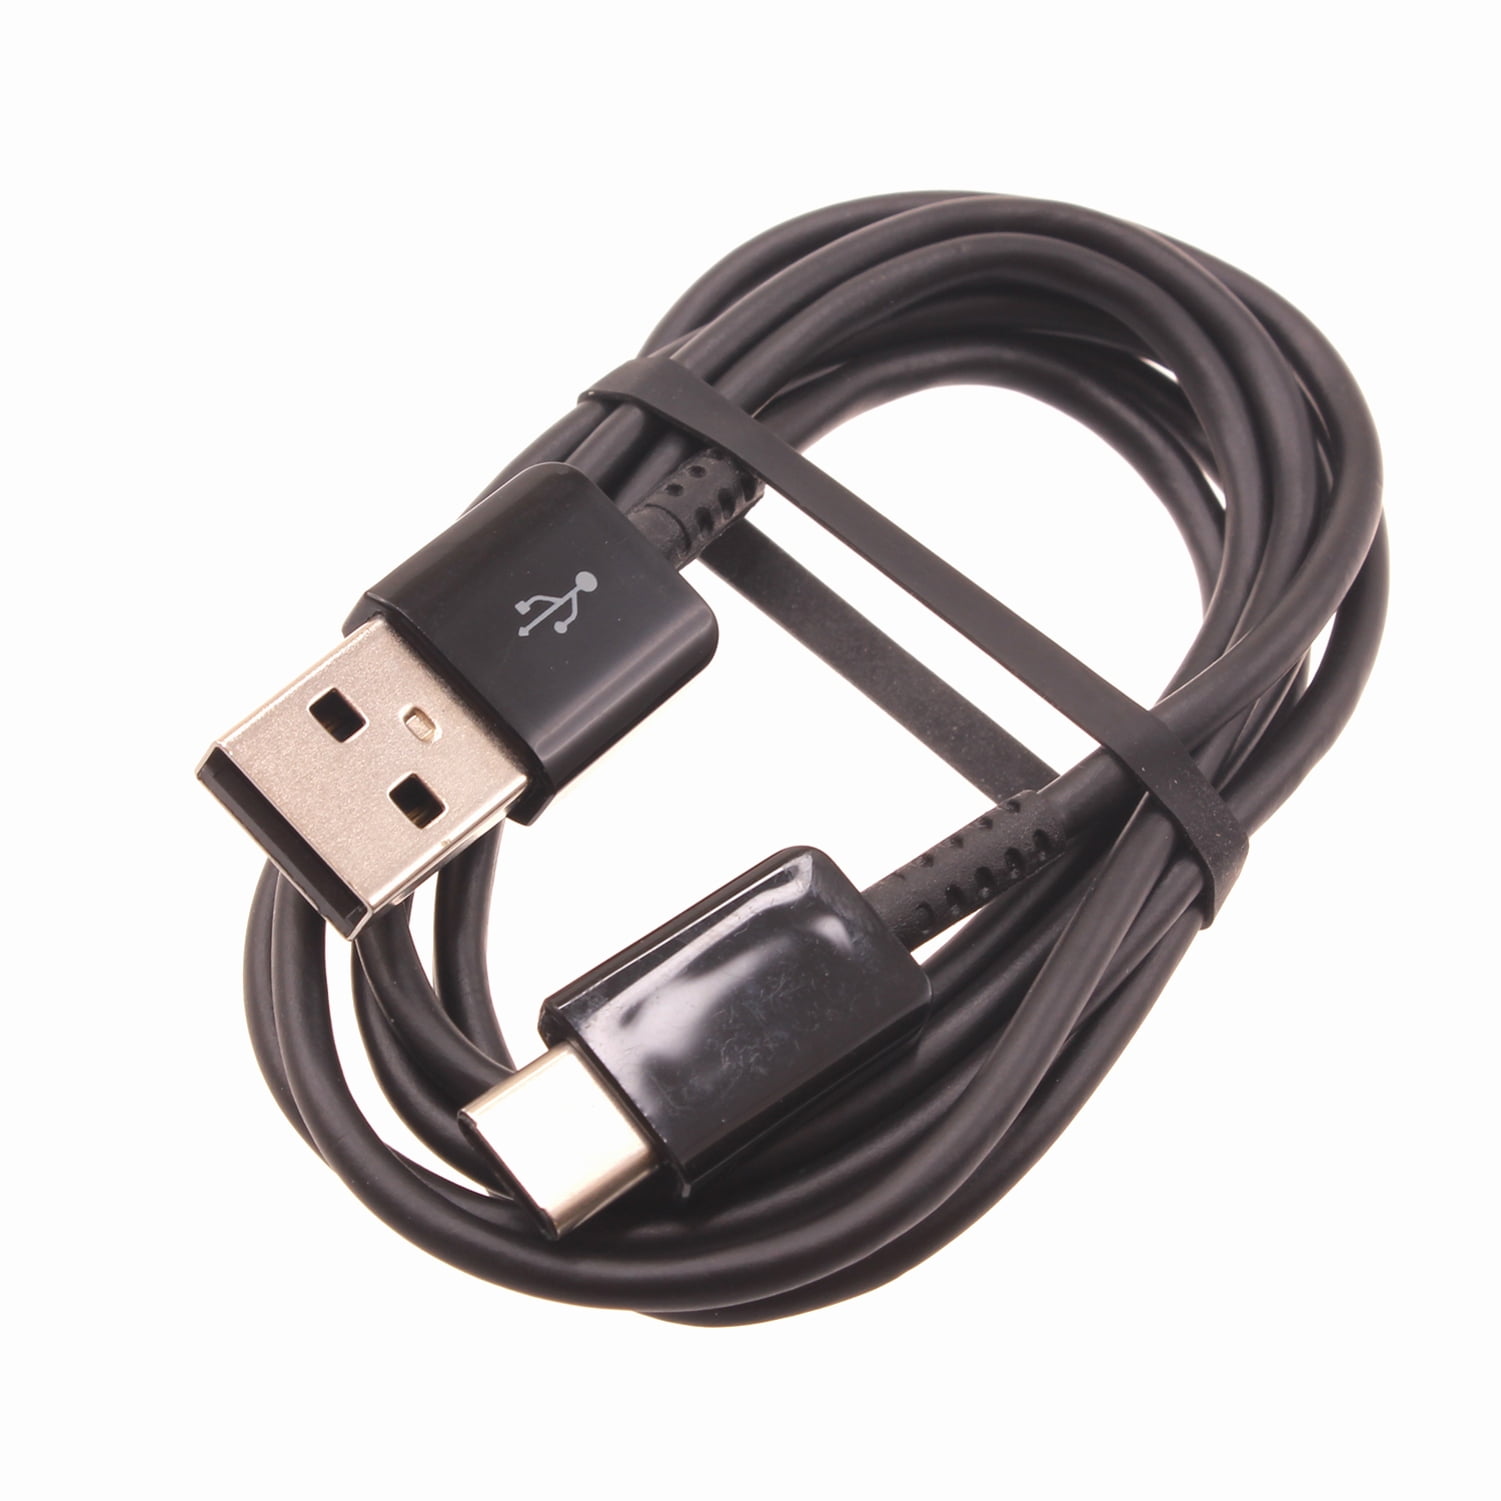 3% sur Cable Blanc Type USB-C 3M pour Samsung galaxy S21 - S21